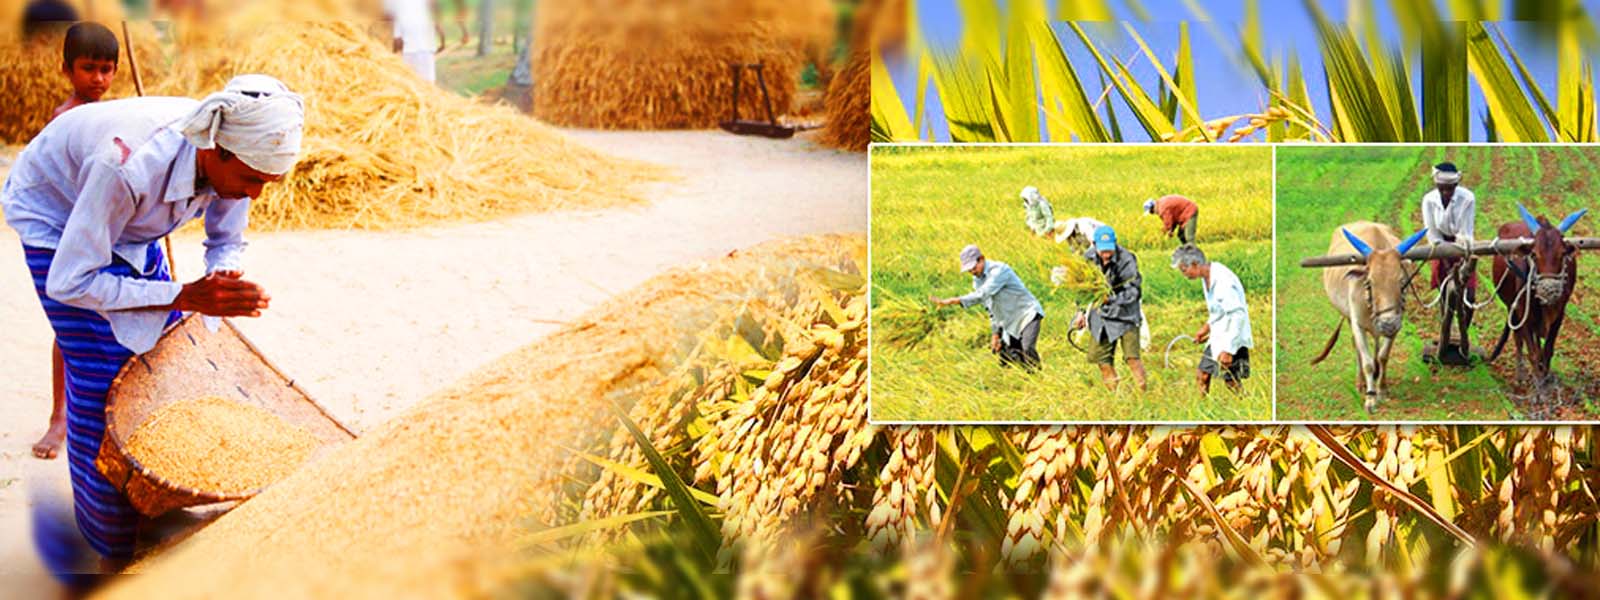 Farmers begin reaping Maha season paddy harvests 